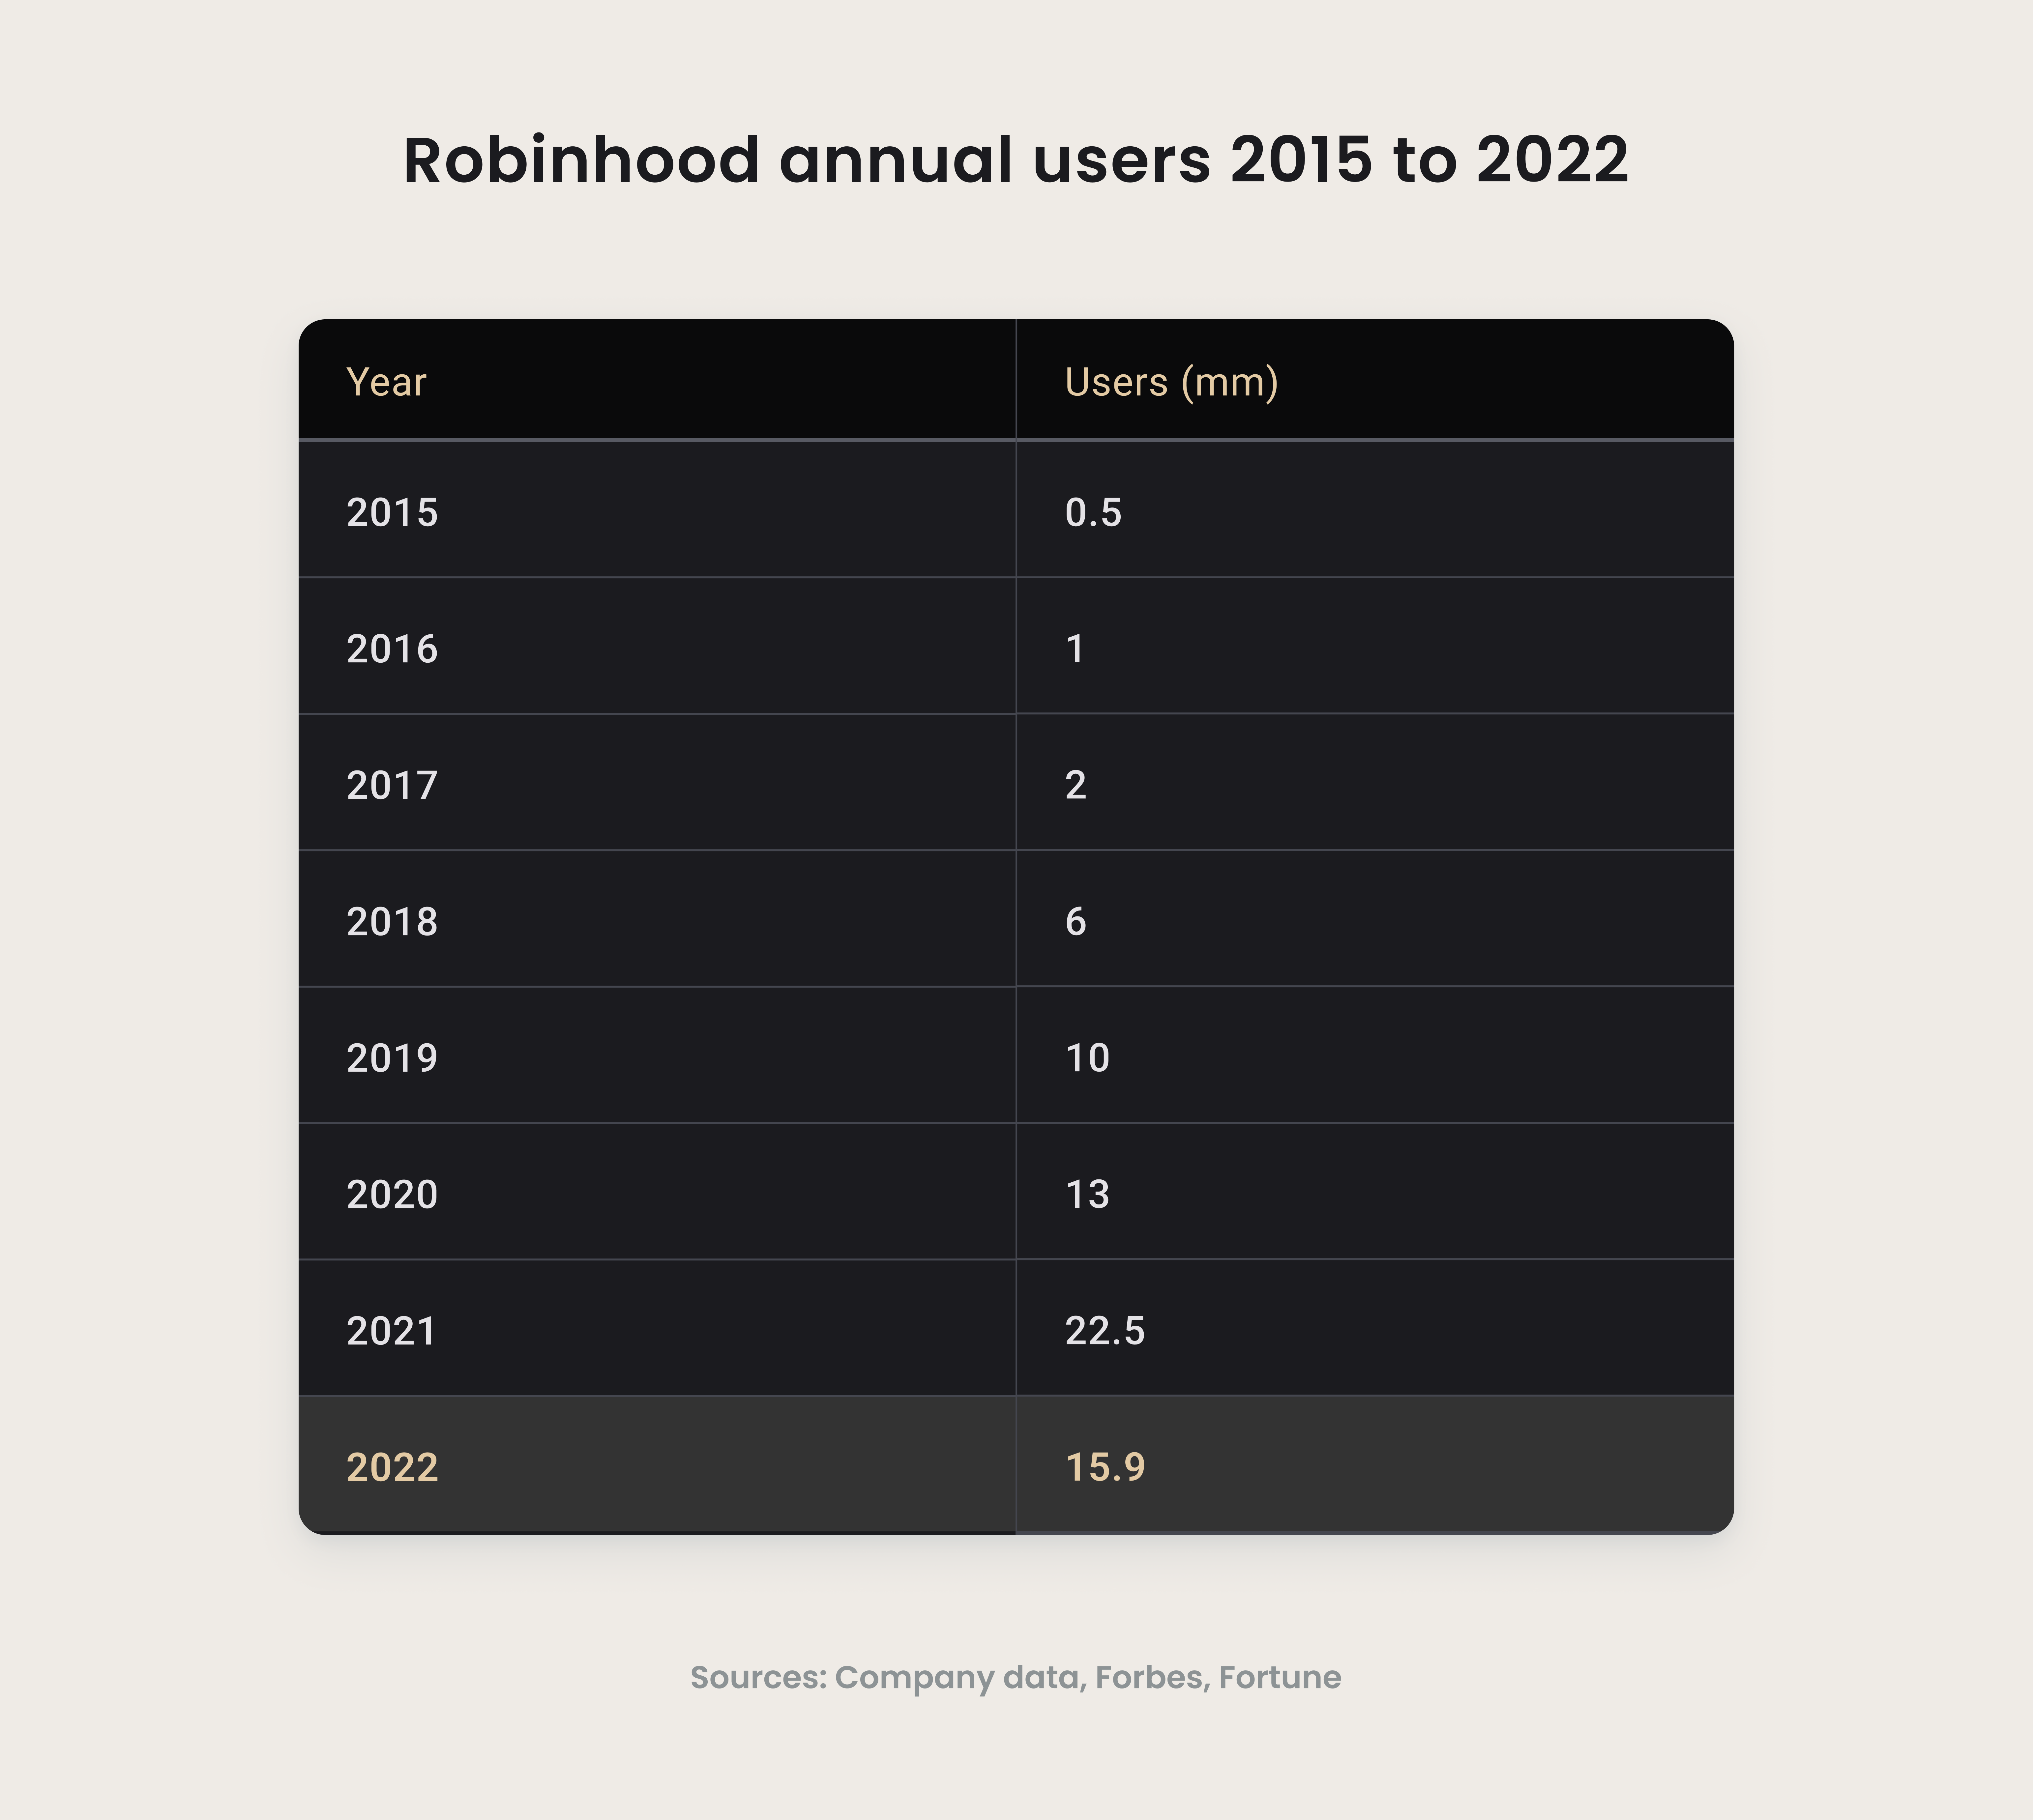 Robinhood annual users 2015 to 2022